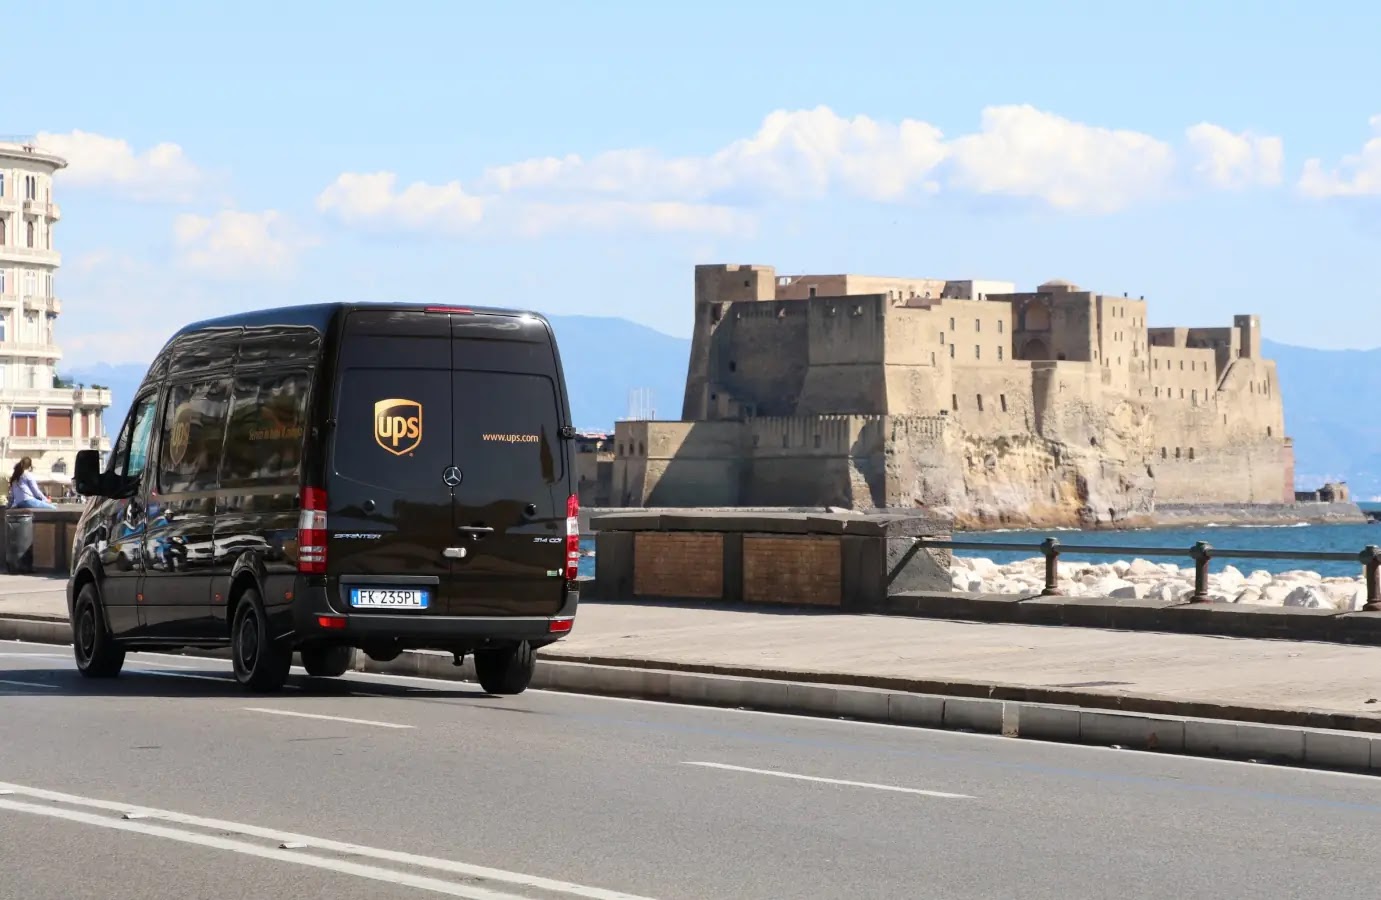 Un furgone UPS sul lungomare di Napoli